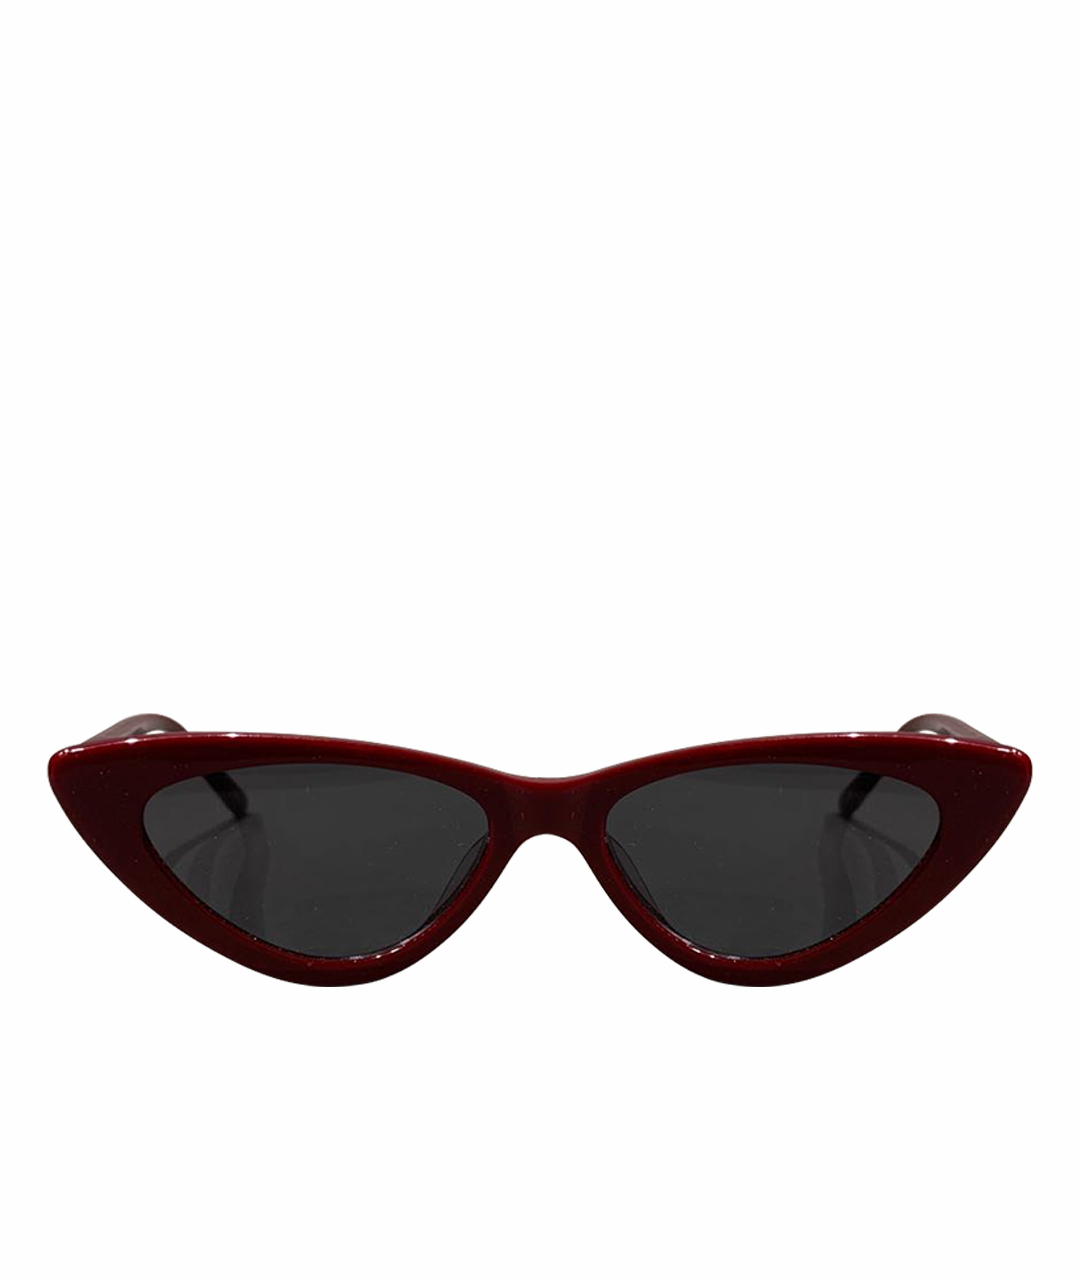 ADAM SELMAN Бордовые пластиковые солнцезащитные очки, фото 1